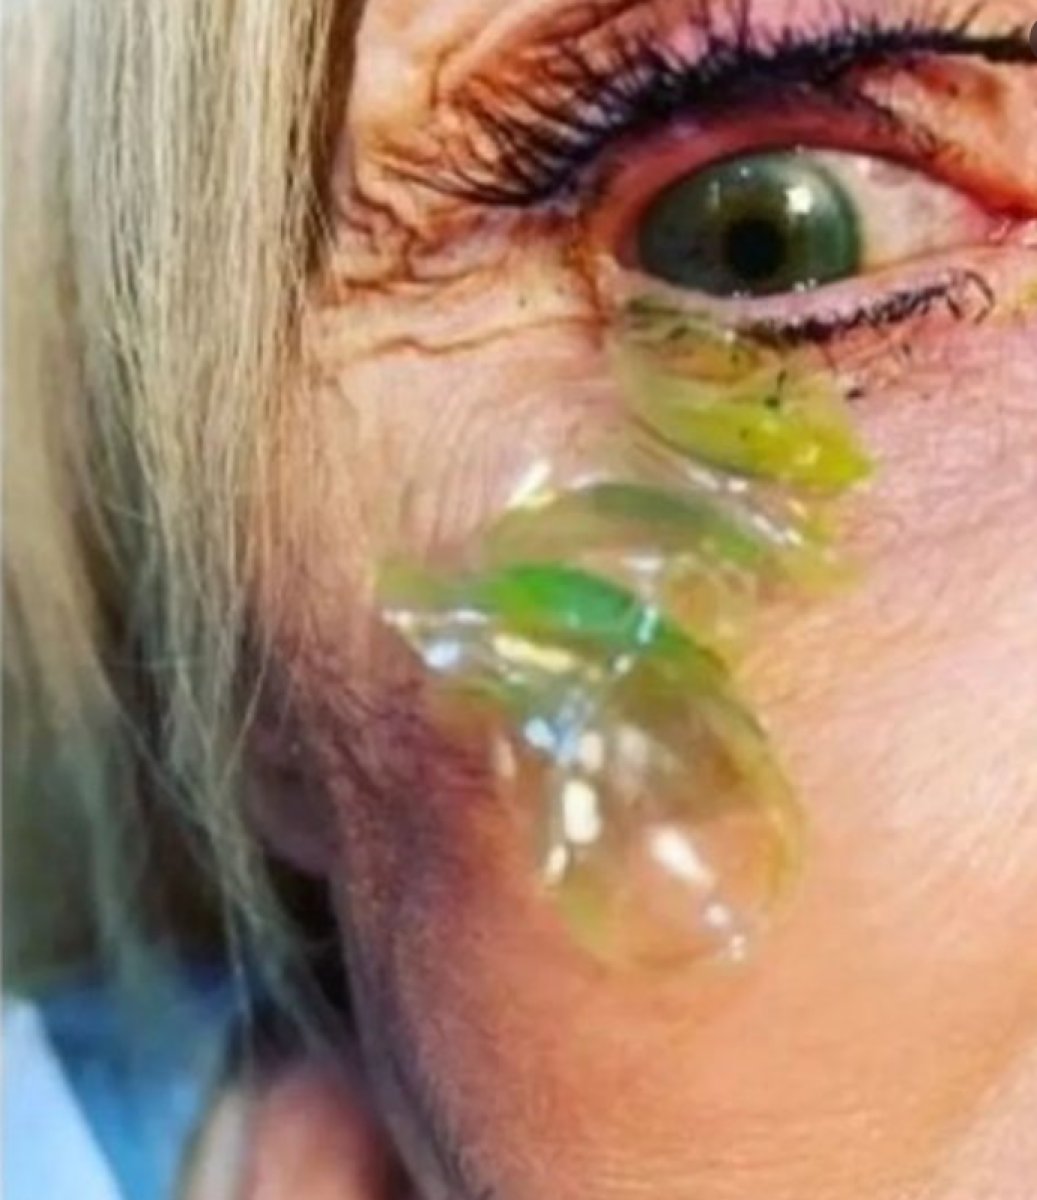 ABD’de, bir kadının gözünden 23 kontakt lens çıktı #3